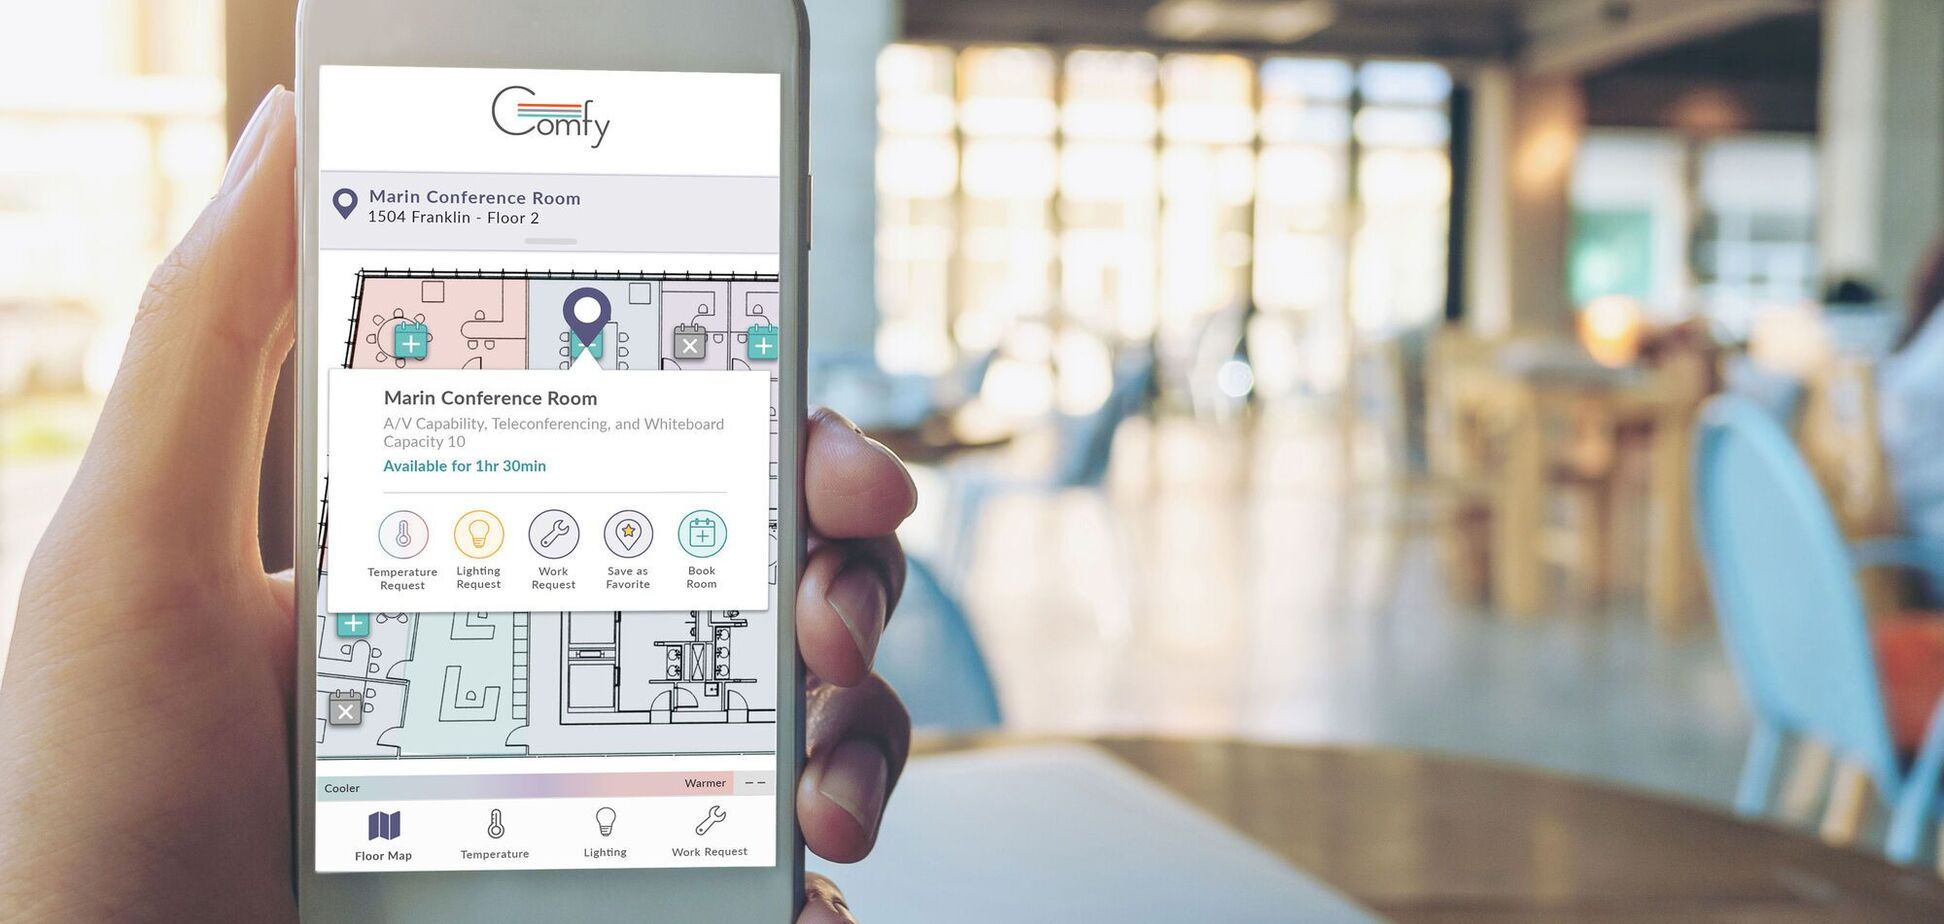 Компания Siemens разработала приложение Comfy для управления рабочим местом на около 600 объектах по всему миру